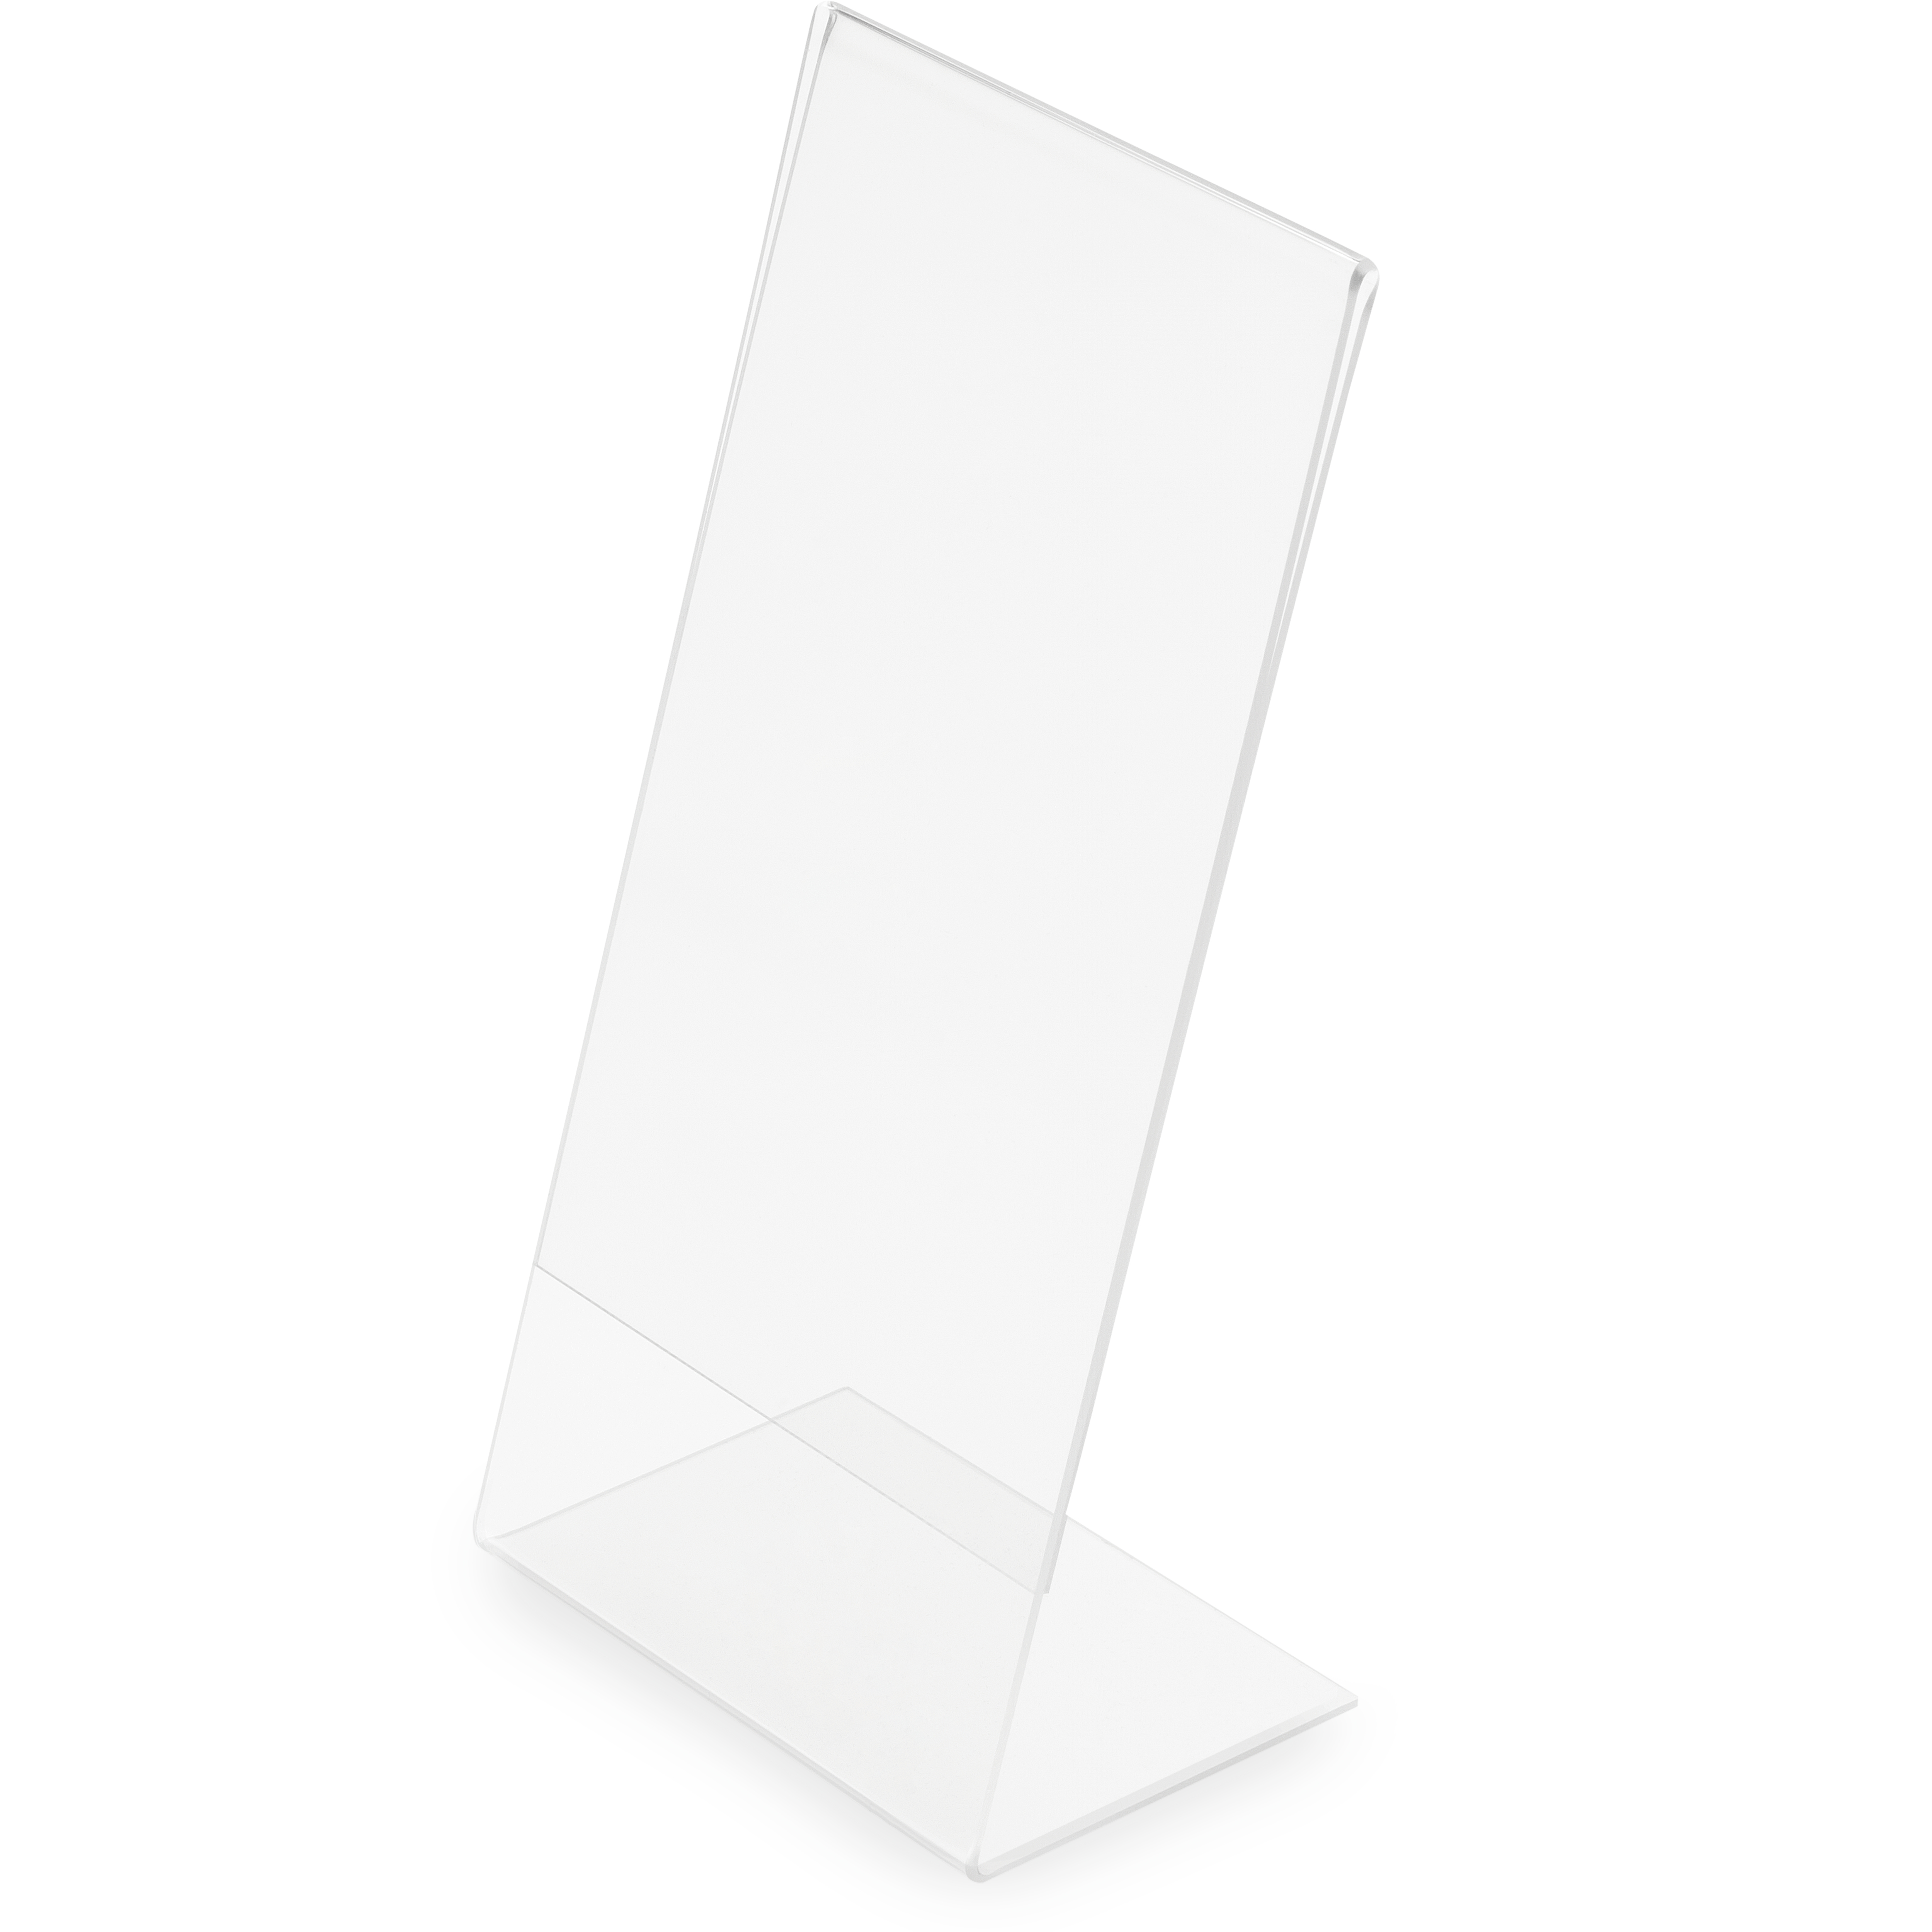 DEFLECTO Présentoir Table Acrylique A3 43105 biais, vertical biais, vertical